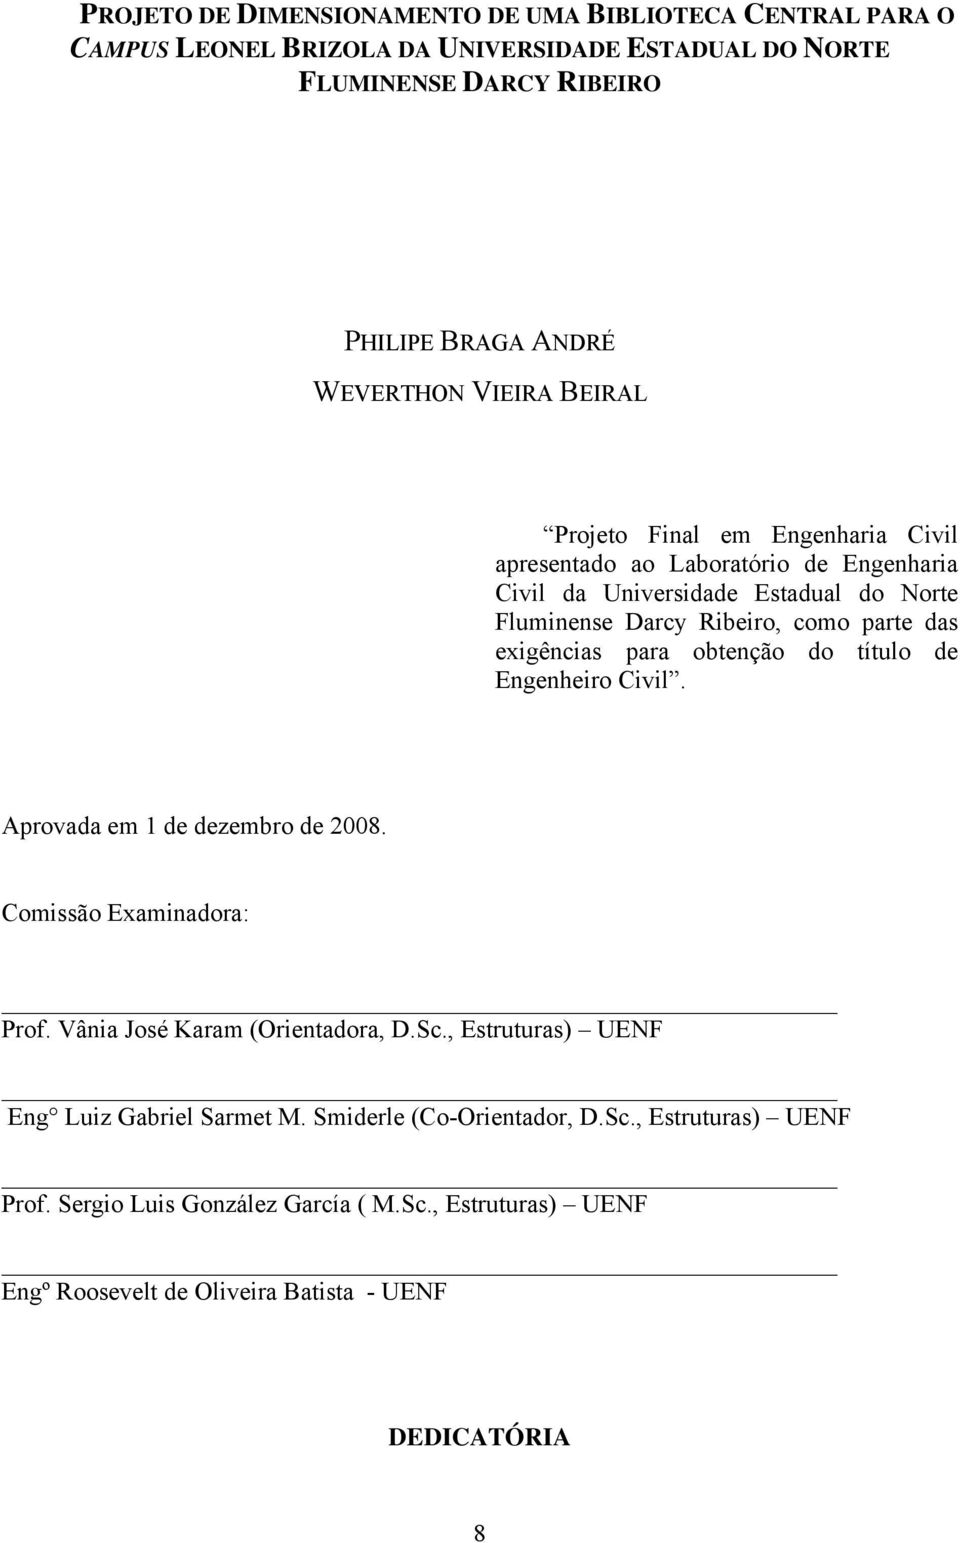 exigências para obtenção do título de Engenheiro Civil. Aprovada em 1 de dezembro de 2008. Comissão Examinadora: Prof. Vânia José Karam (Orientadora, D.Sc.